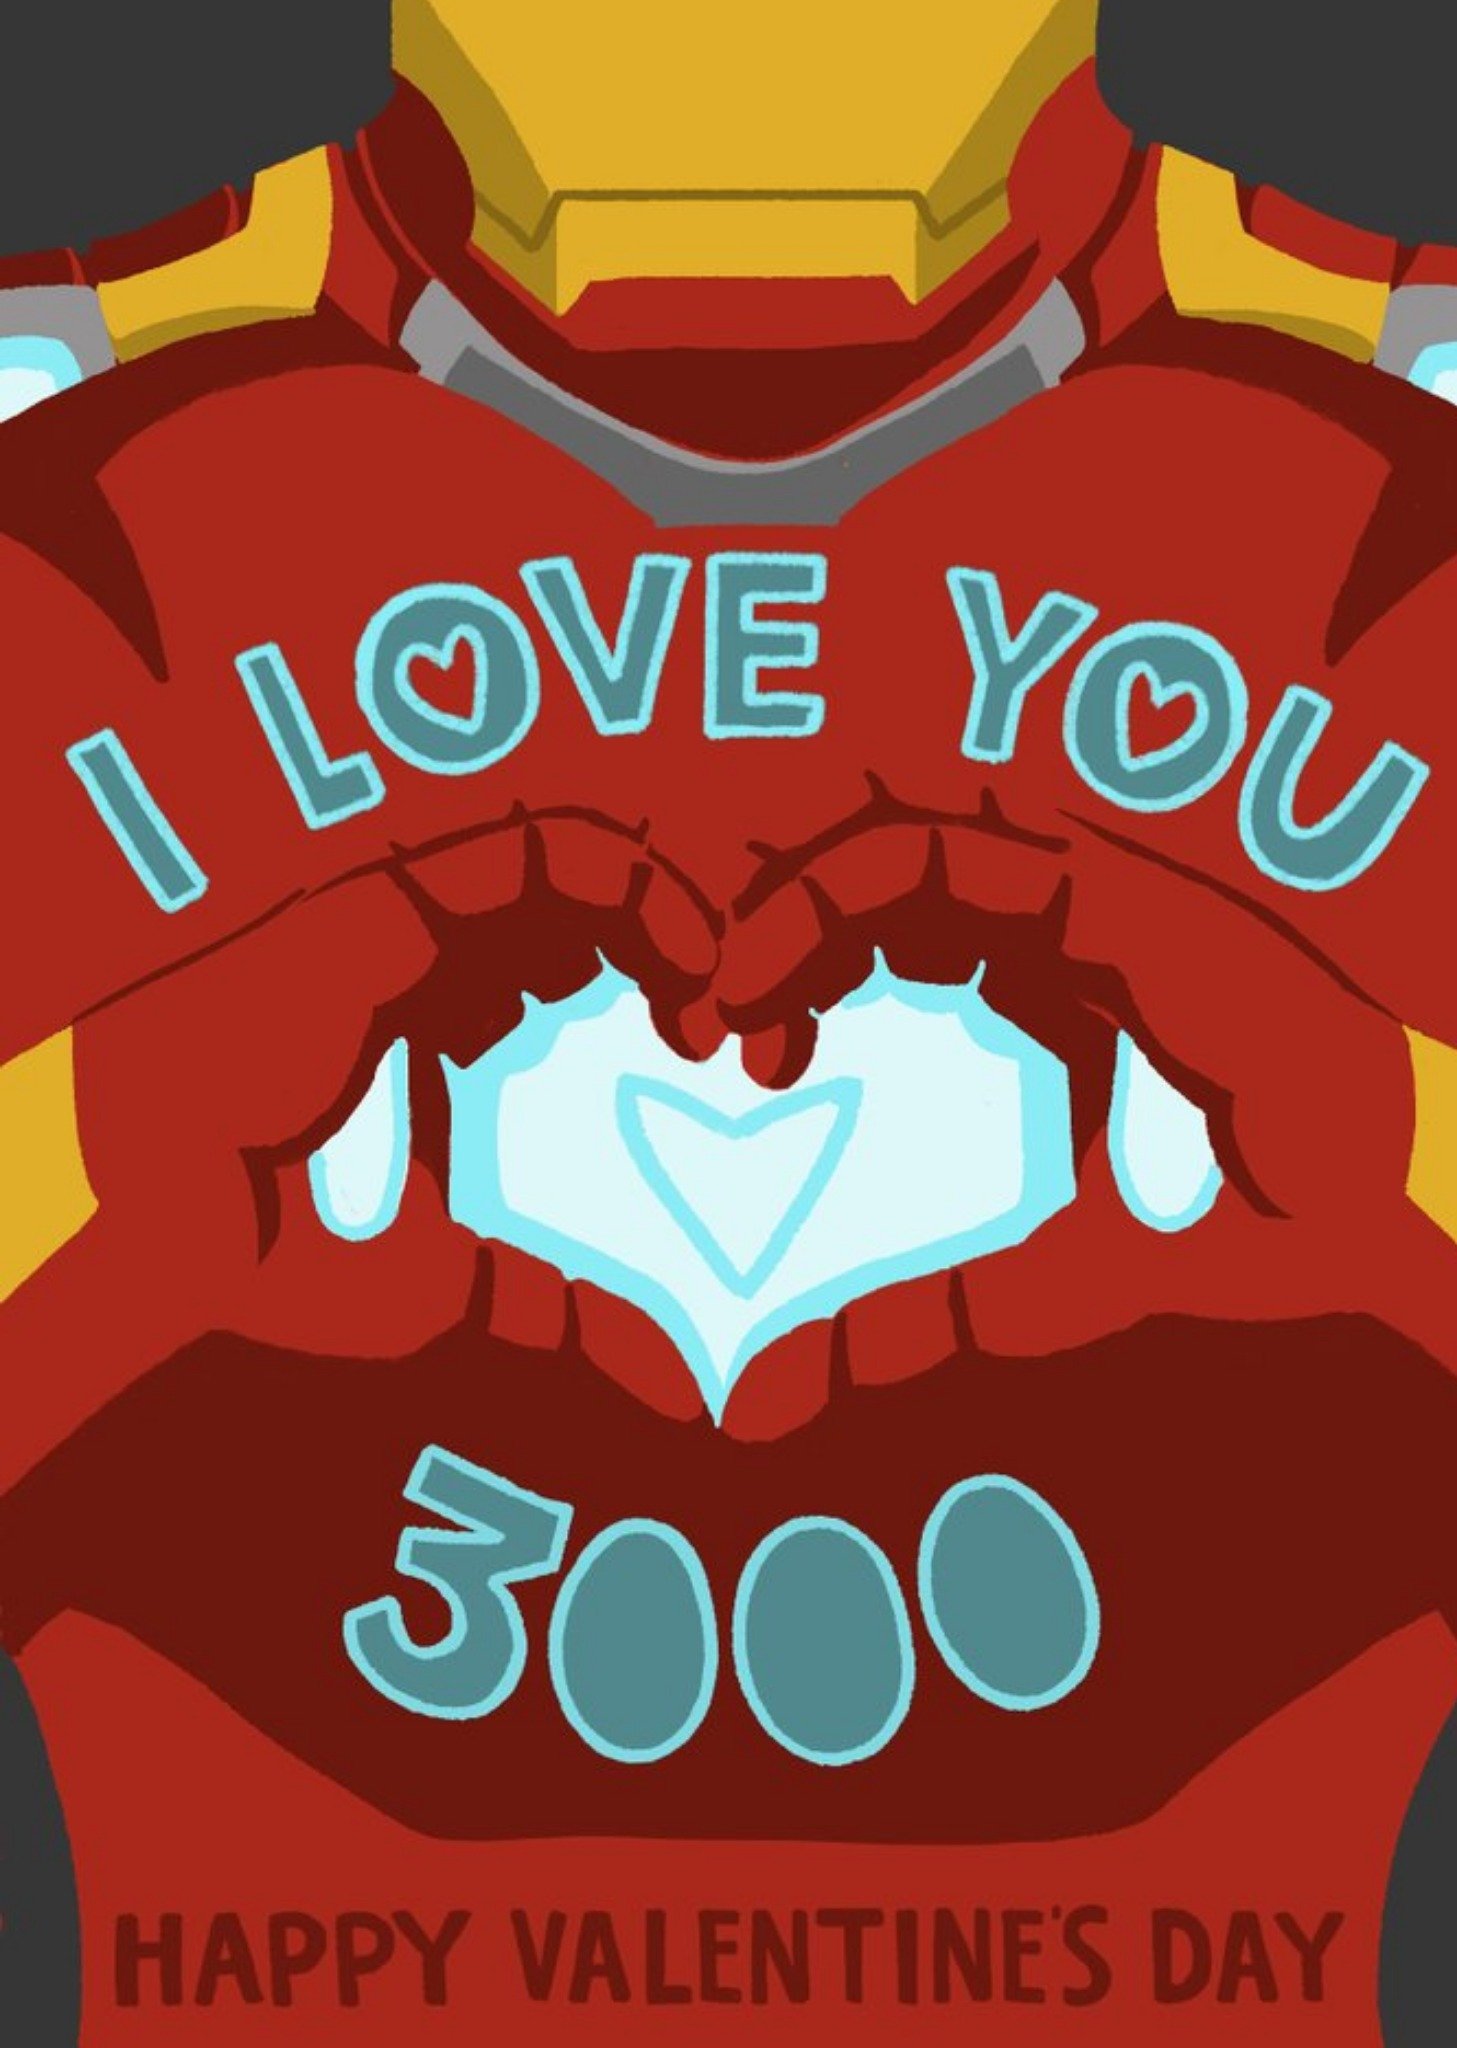 Disney Marvel Avengers Endgame I Love You 3000 Valentine's Day Card, Large